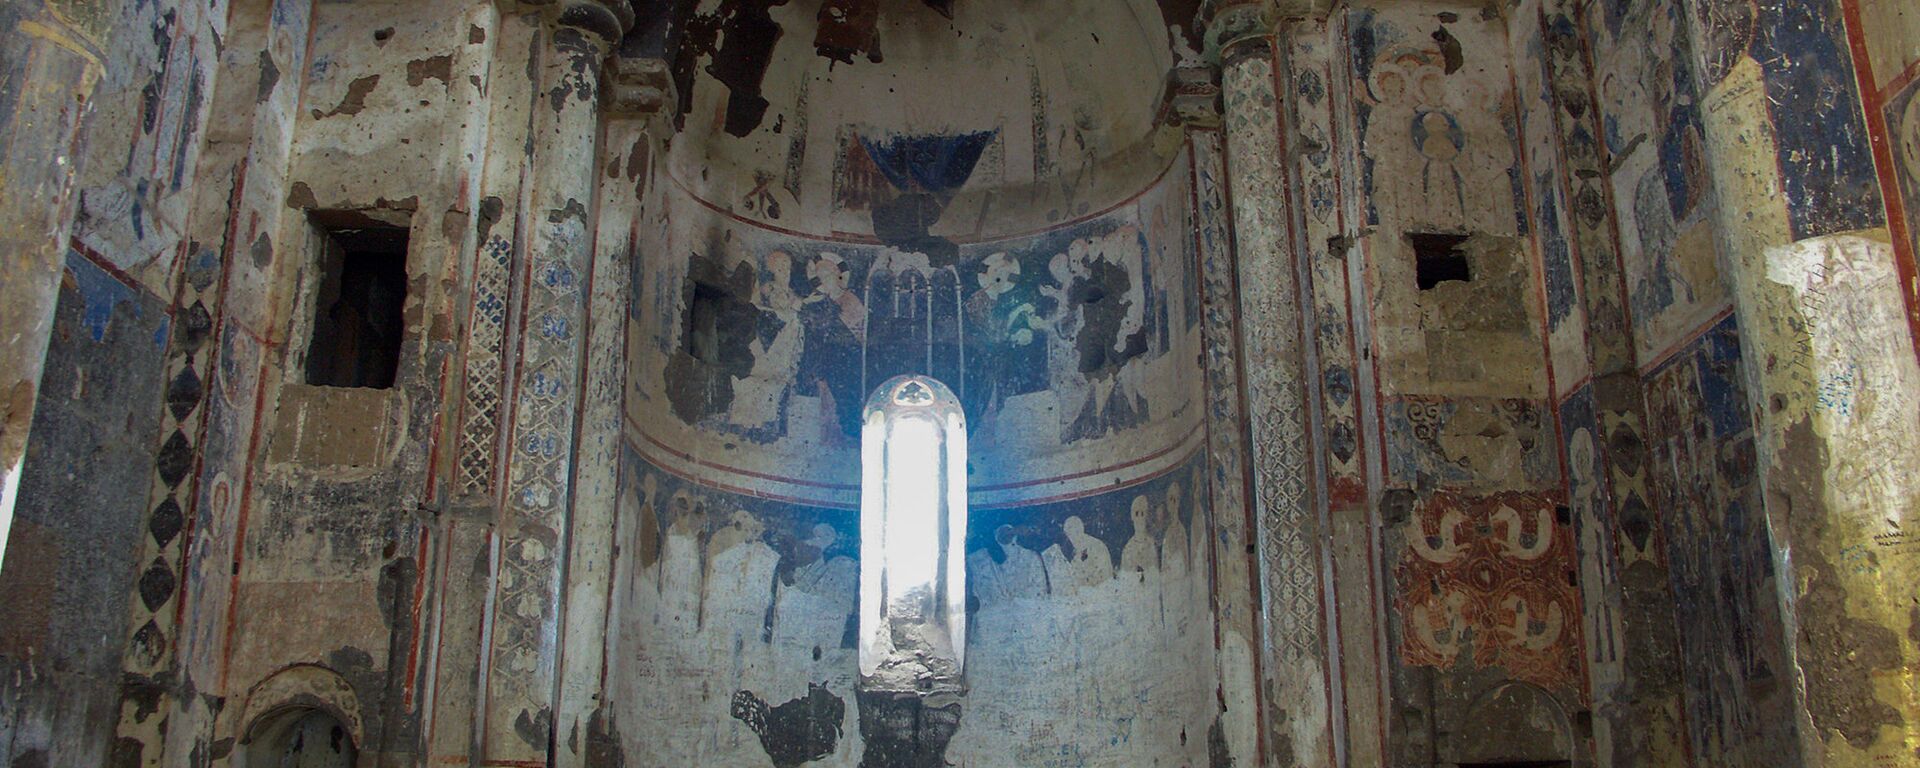 Фрески церкви Тигран Оненц в Ани - Sputnik Армения, 1920, 29.08.2021